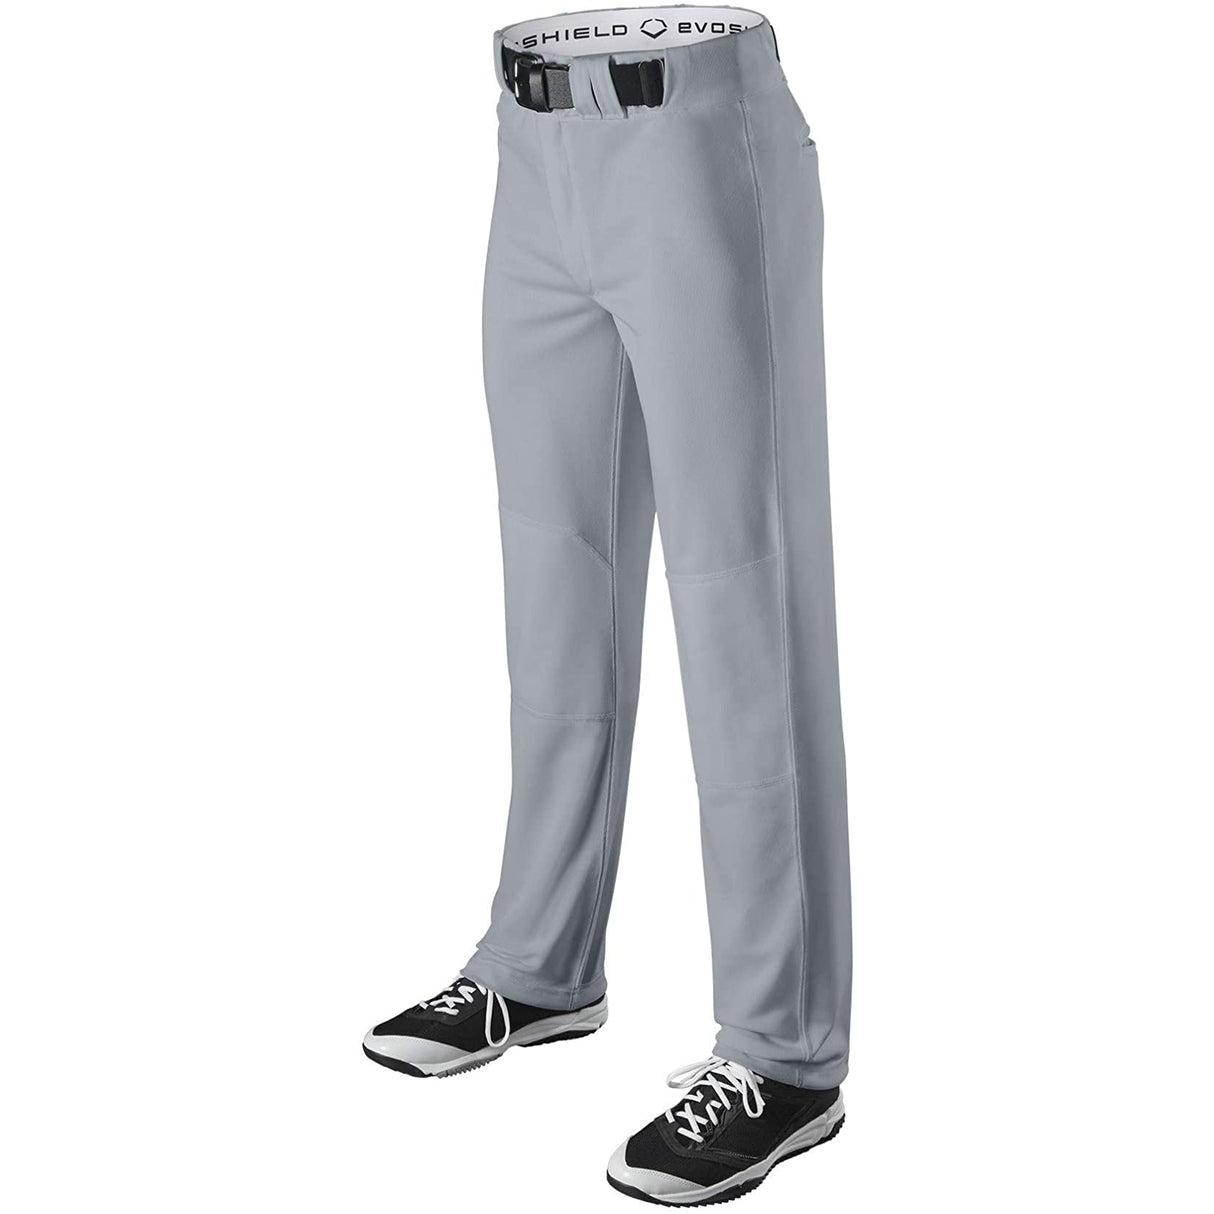 Baseball Uniform Pants